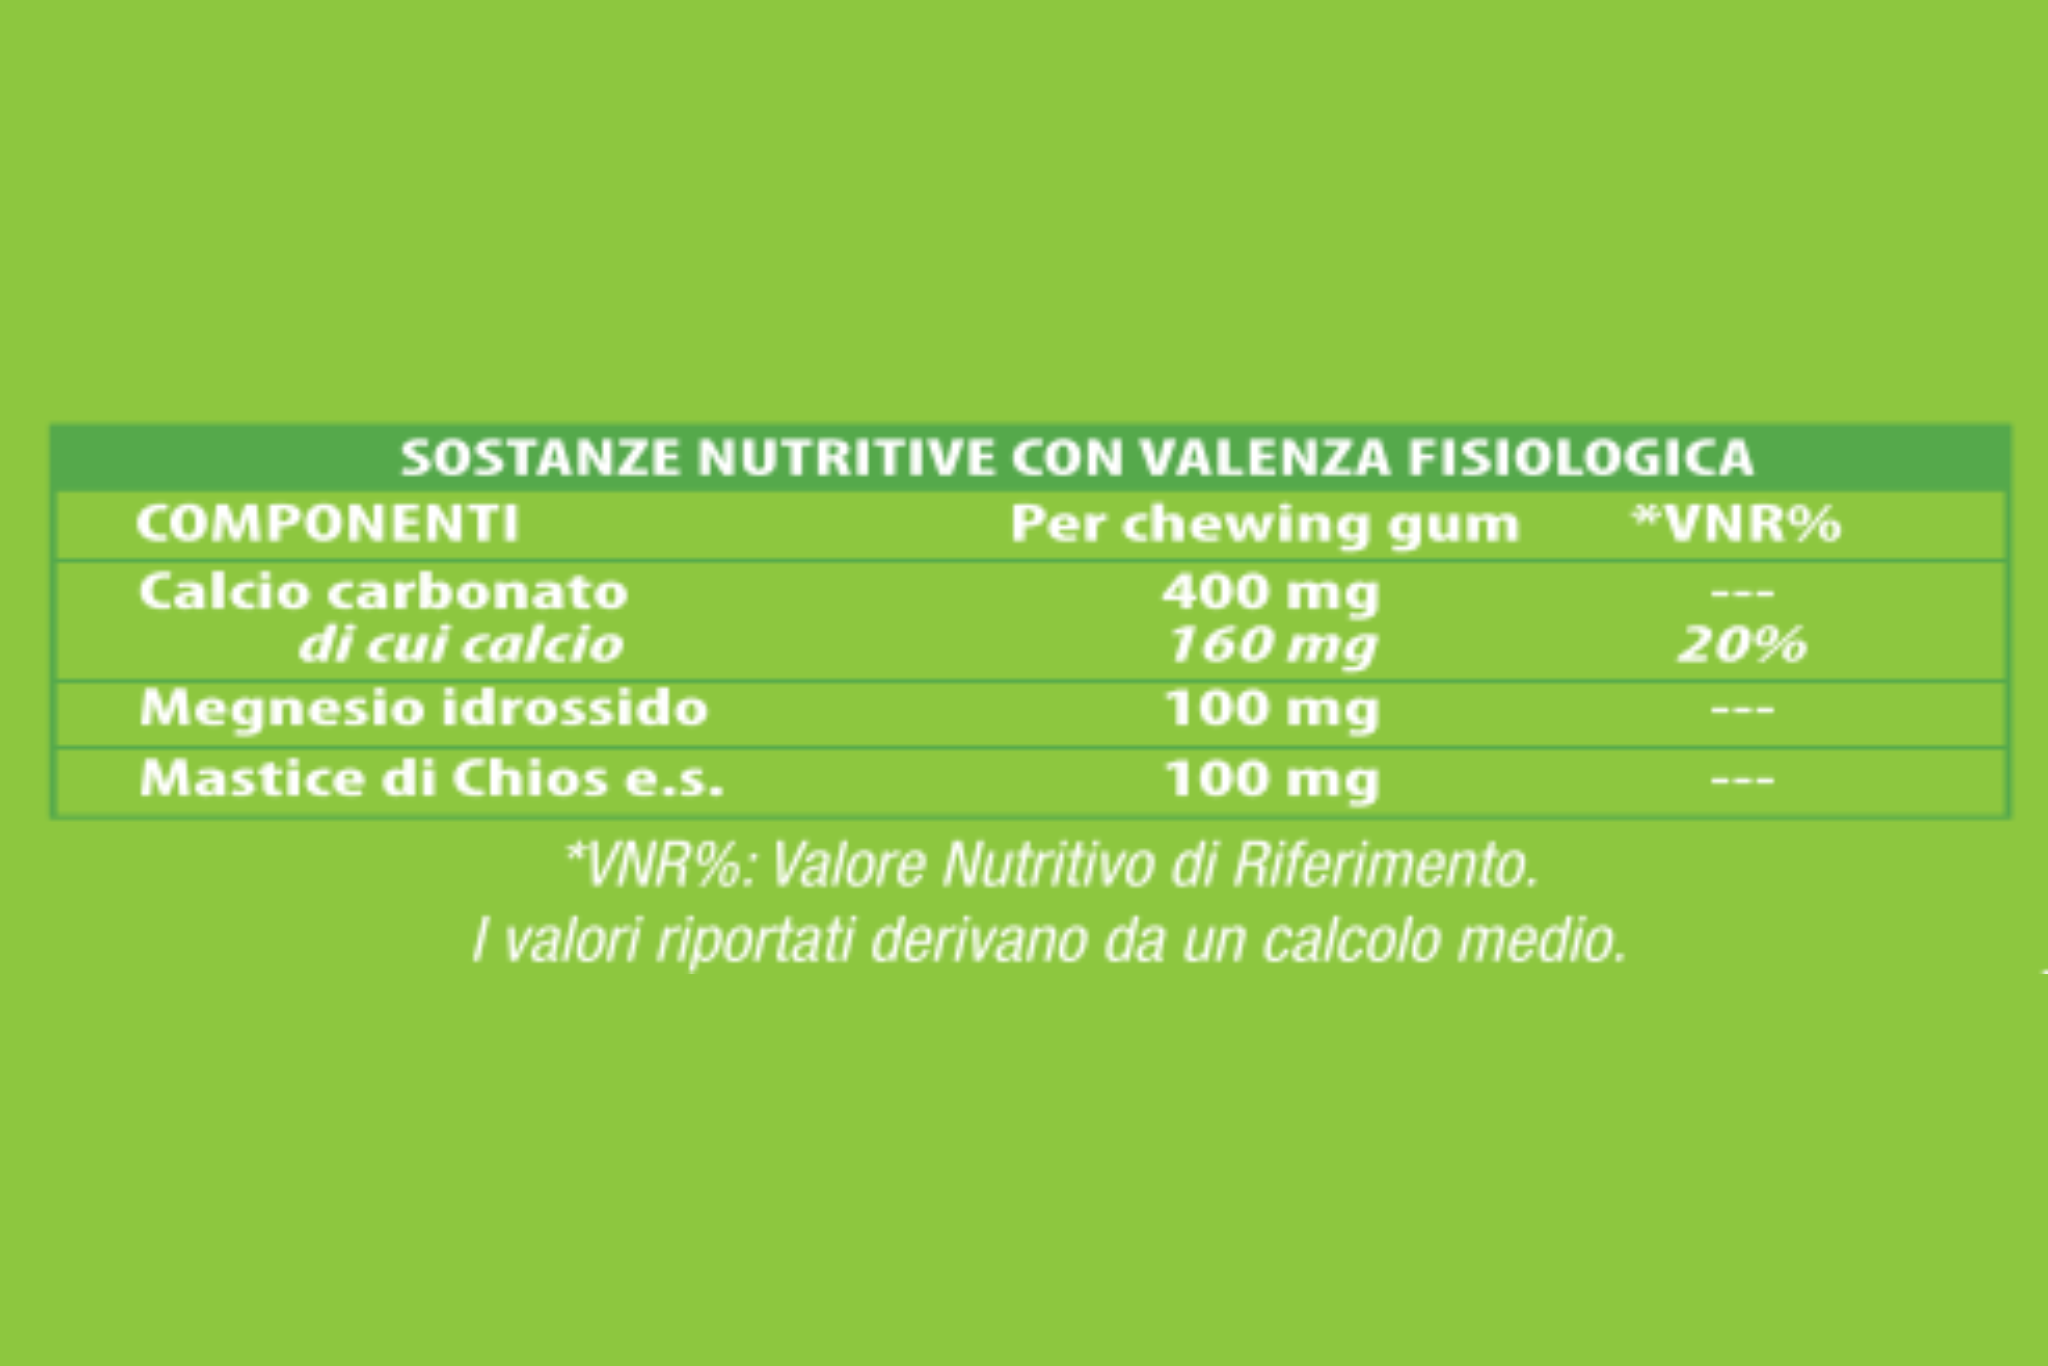 No Acid Gum. Sostanze nutritive: Calcio carbonato, Magnesio idrossido, Mastice di Chios